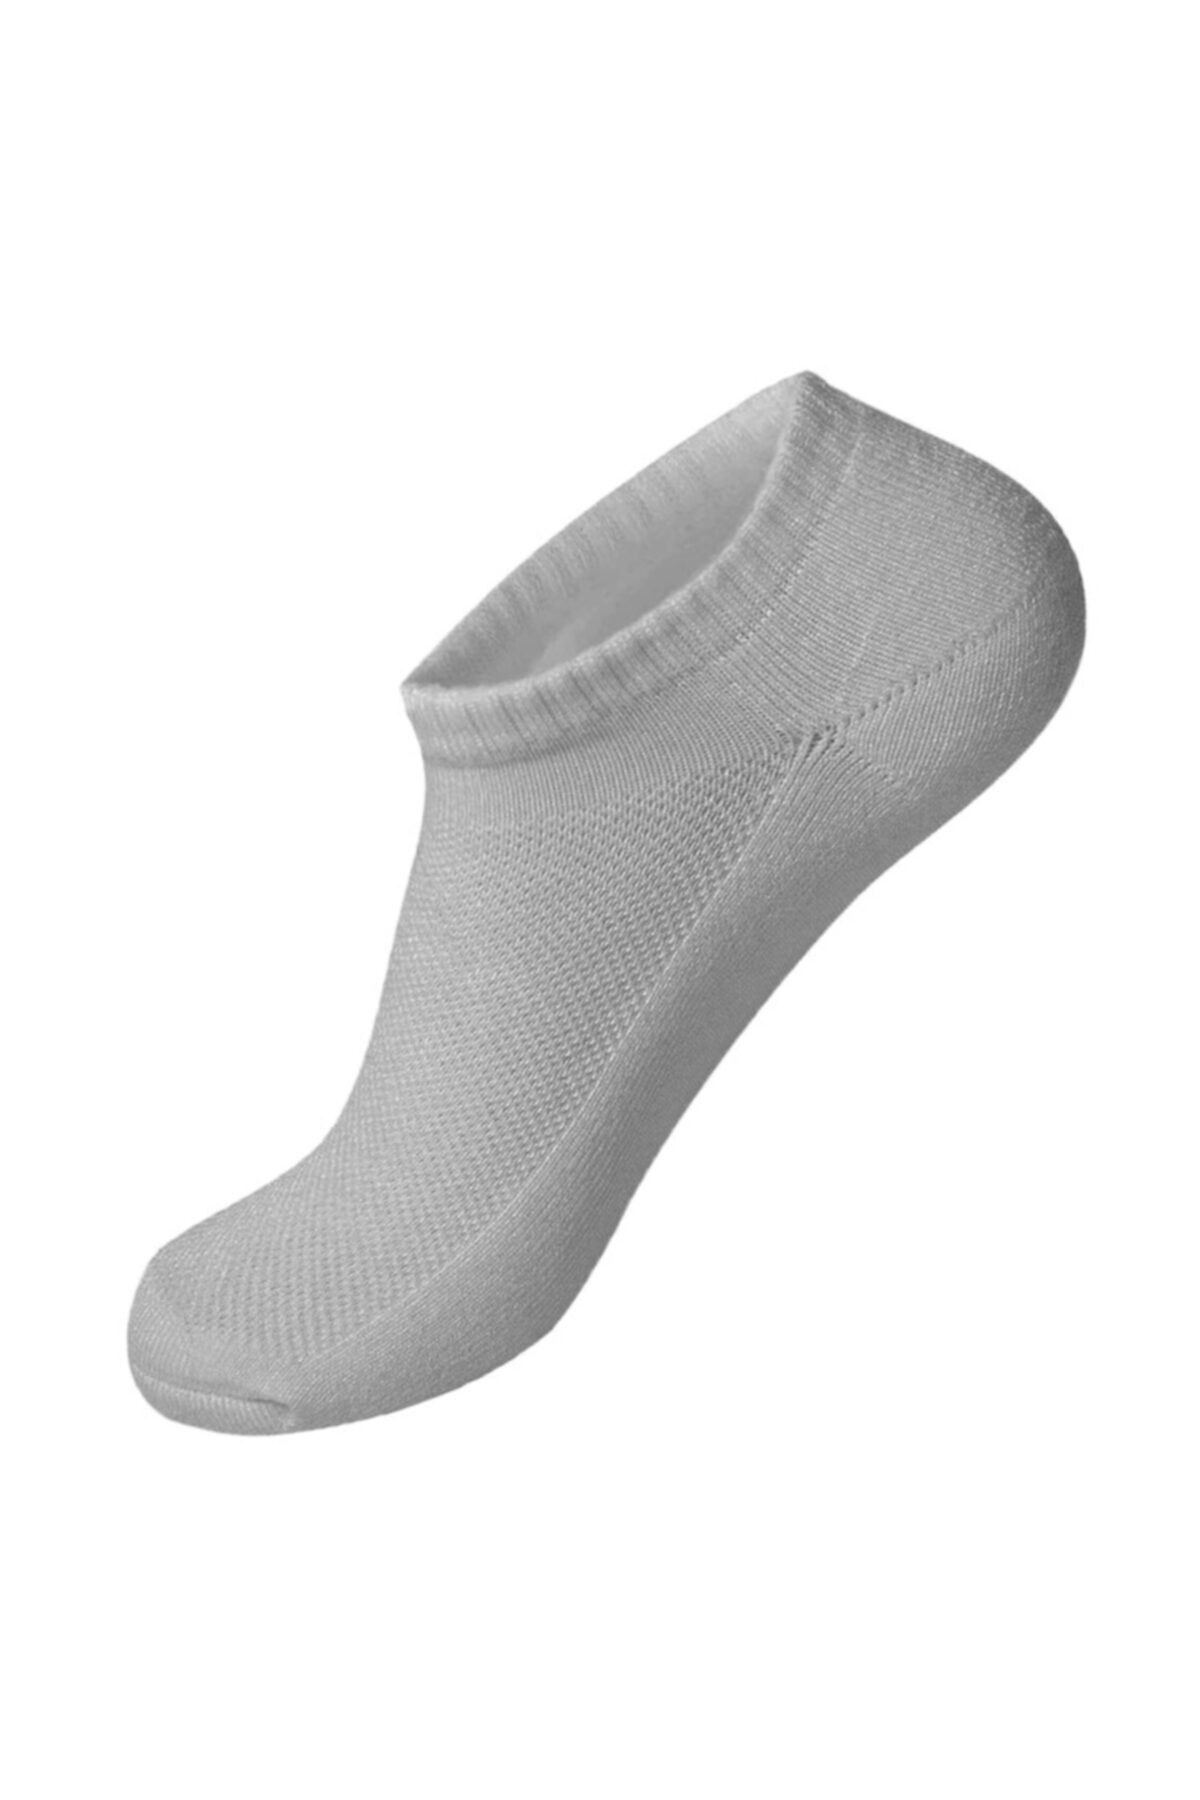 12 Çift Erkek Patik Çorap - Spor Ayakkabı Kısa Soket Çorabı